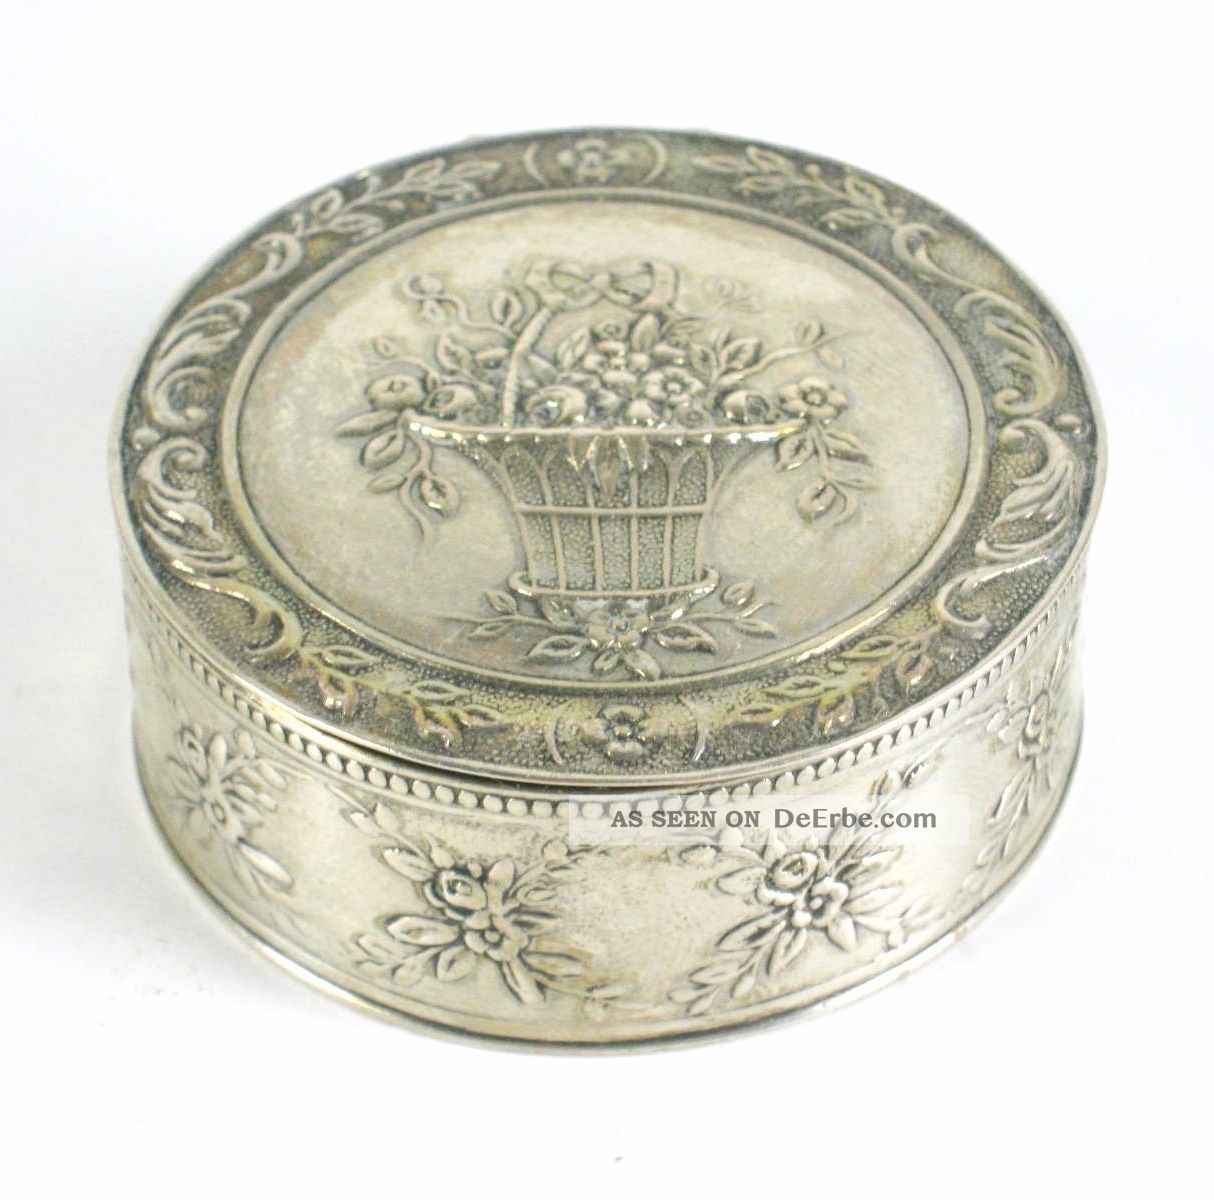 Kleine Dose / Pillendose Aus Silber (geprüft) 43g Silver Box / Pillbox Entstehungszeit nach 1945 Bild